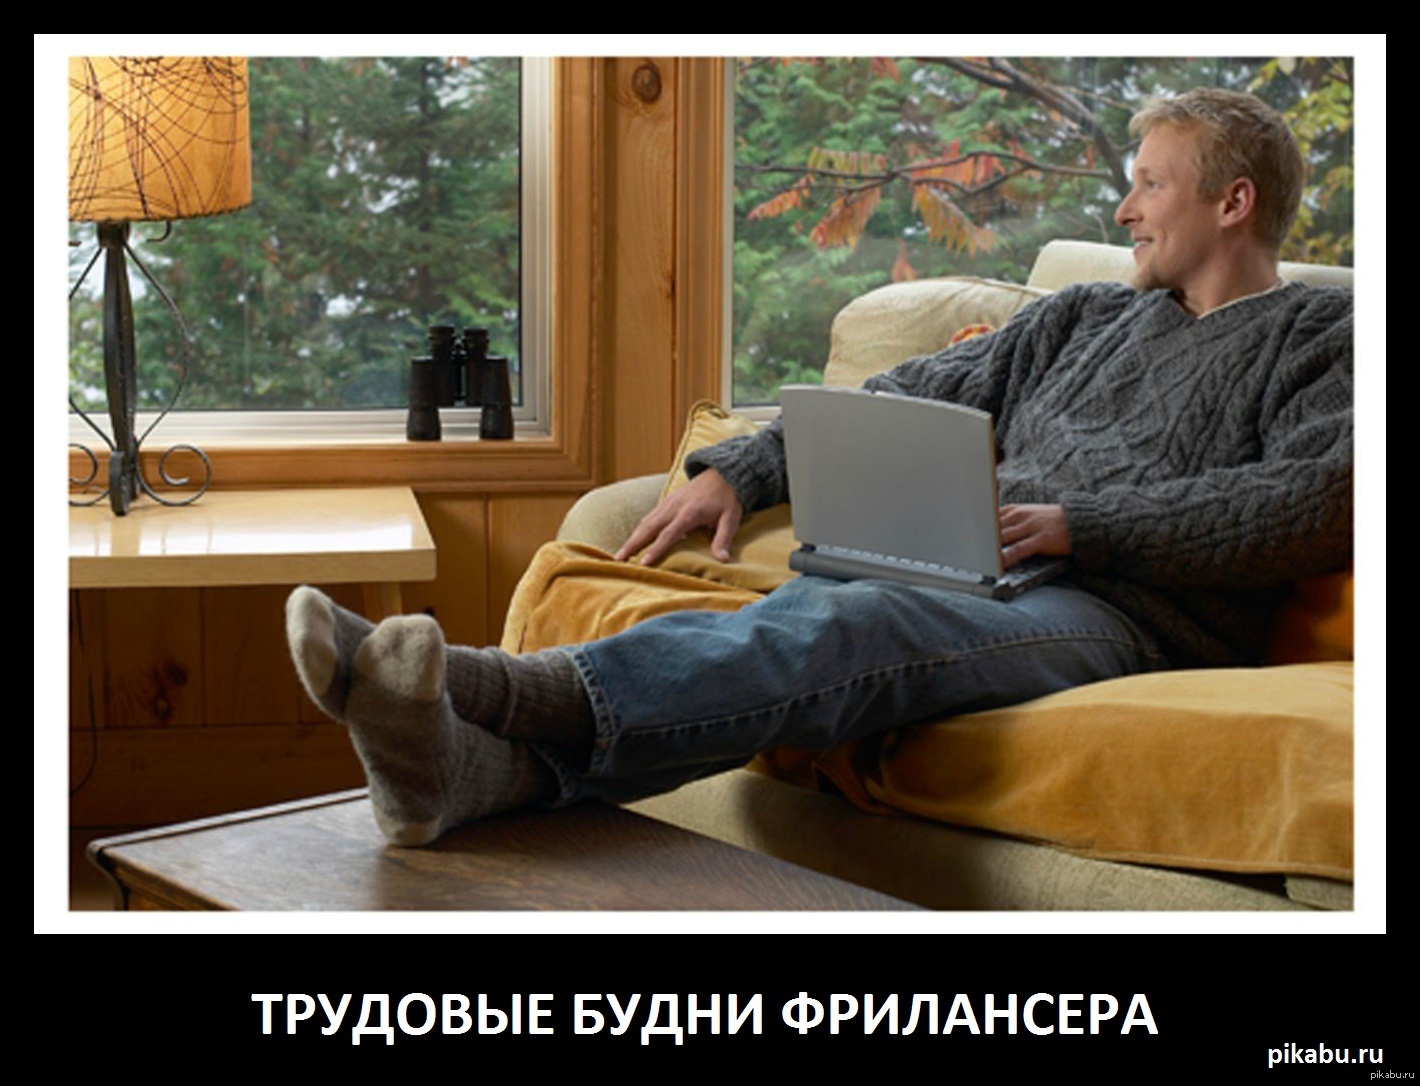 Не домашний будет работает. Человек сидит на диване с ноутбуком. Человек дома. Мужчина на диване с ноутбуком. Человек с ноутом на даче.